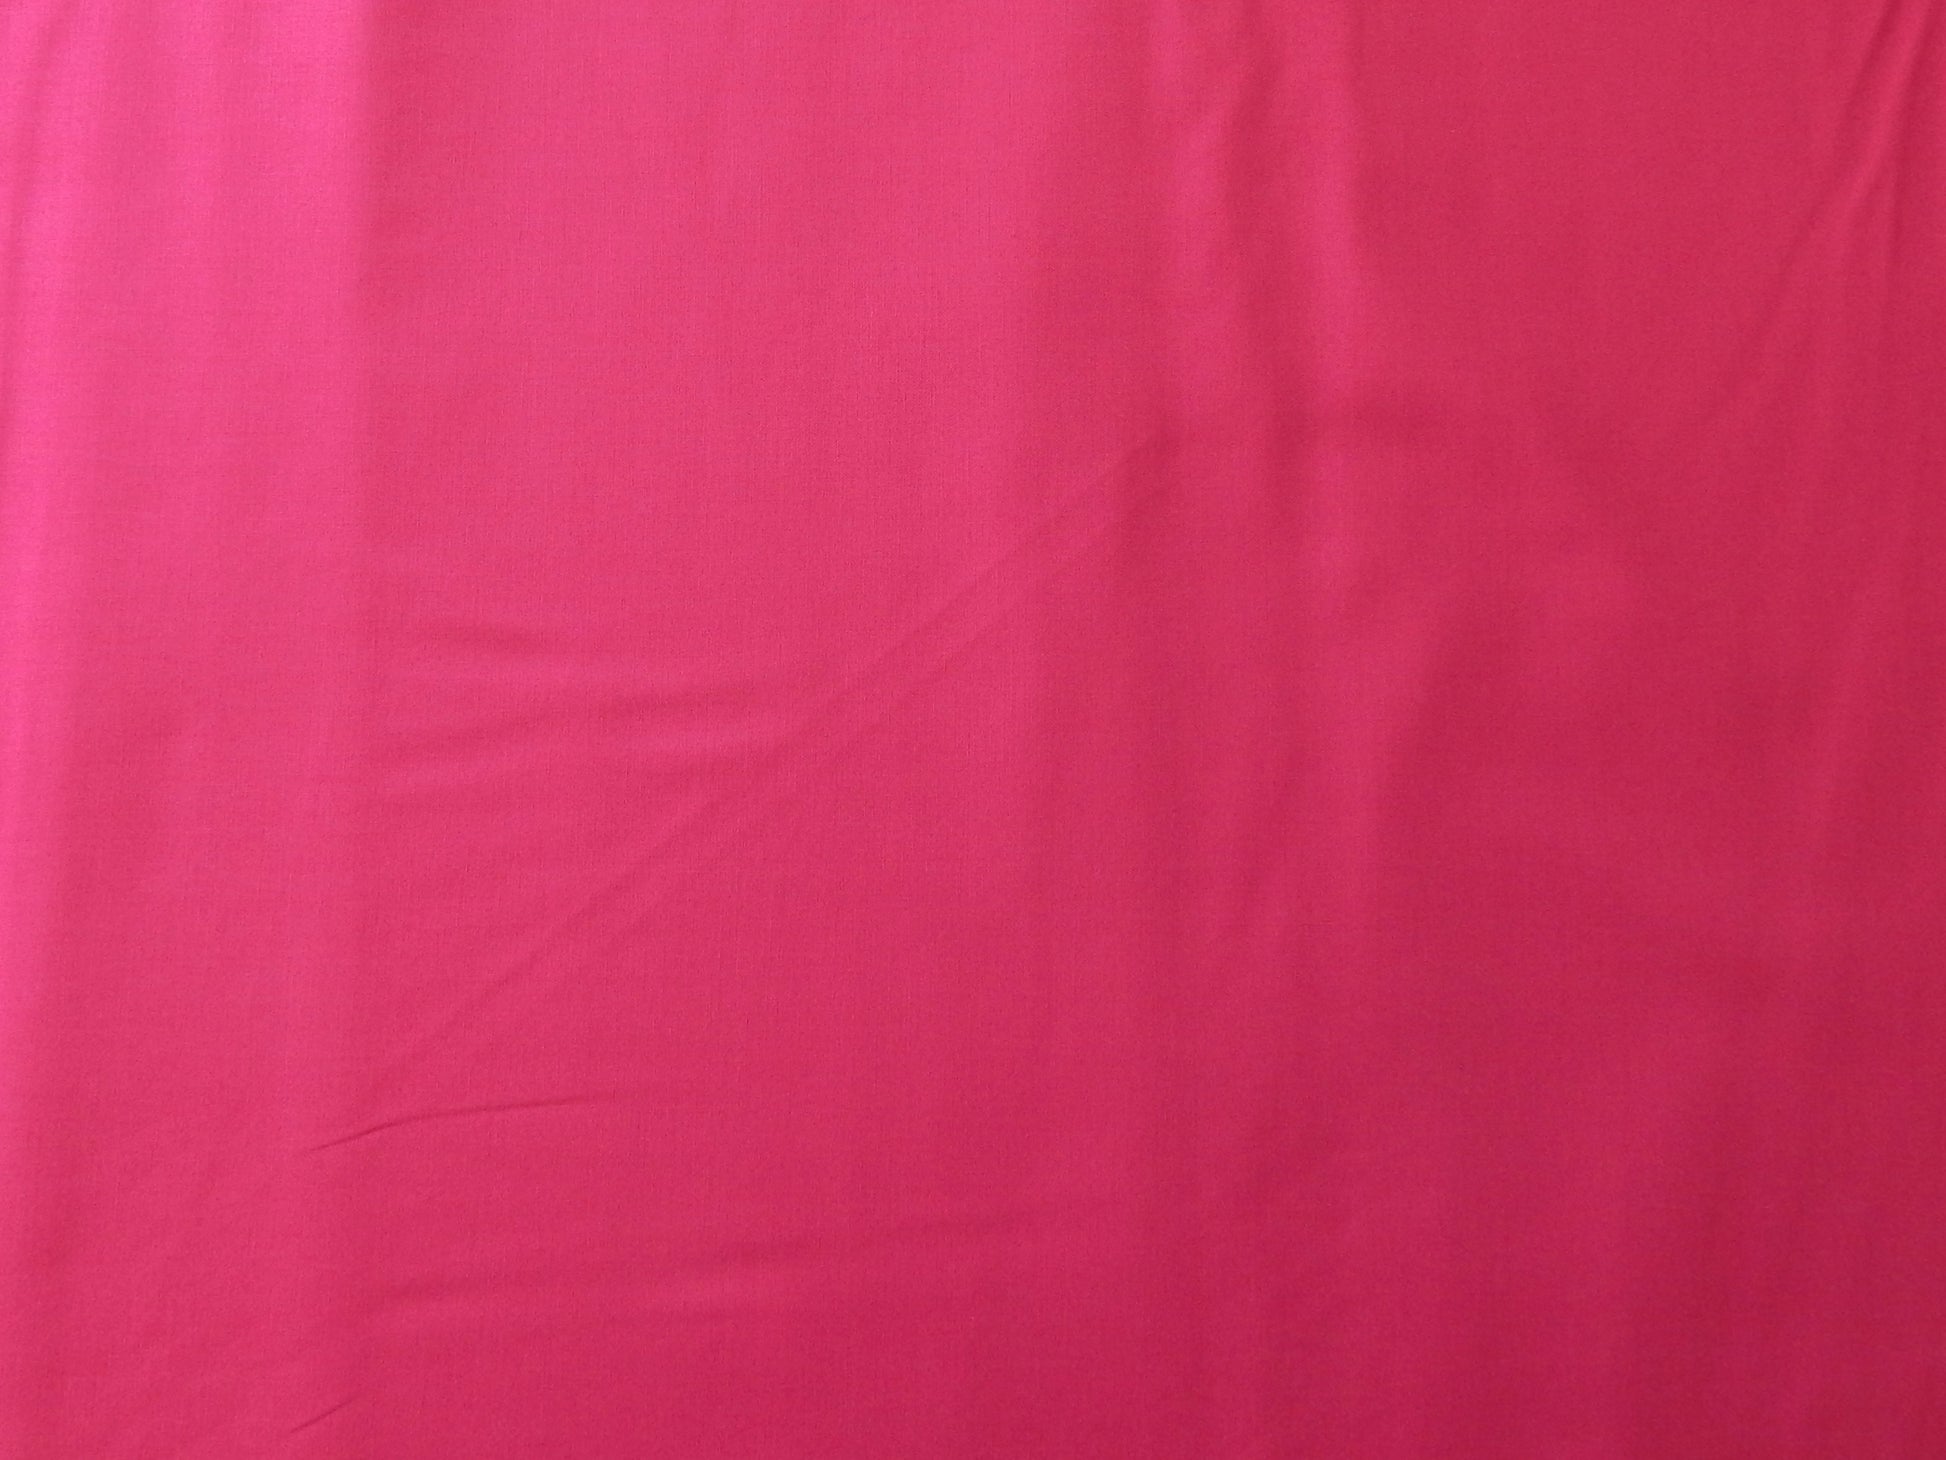 paintbrush studios rosebud pink quilting fabric